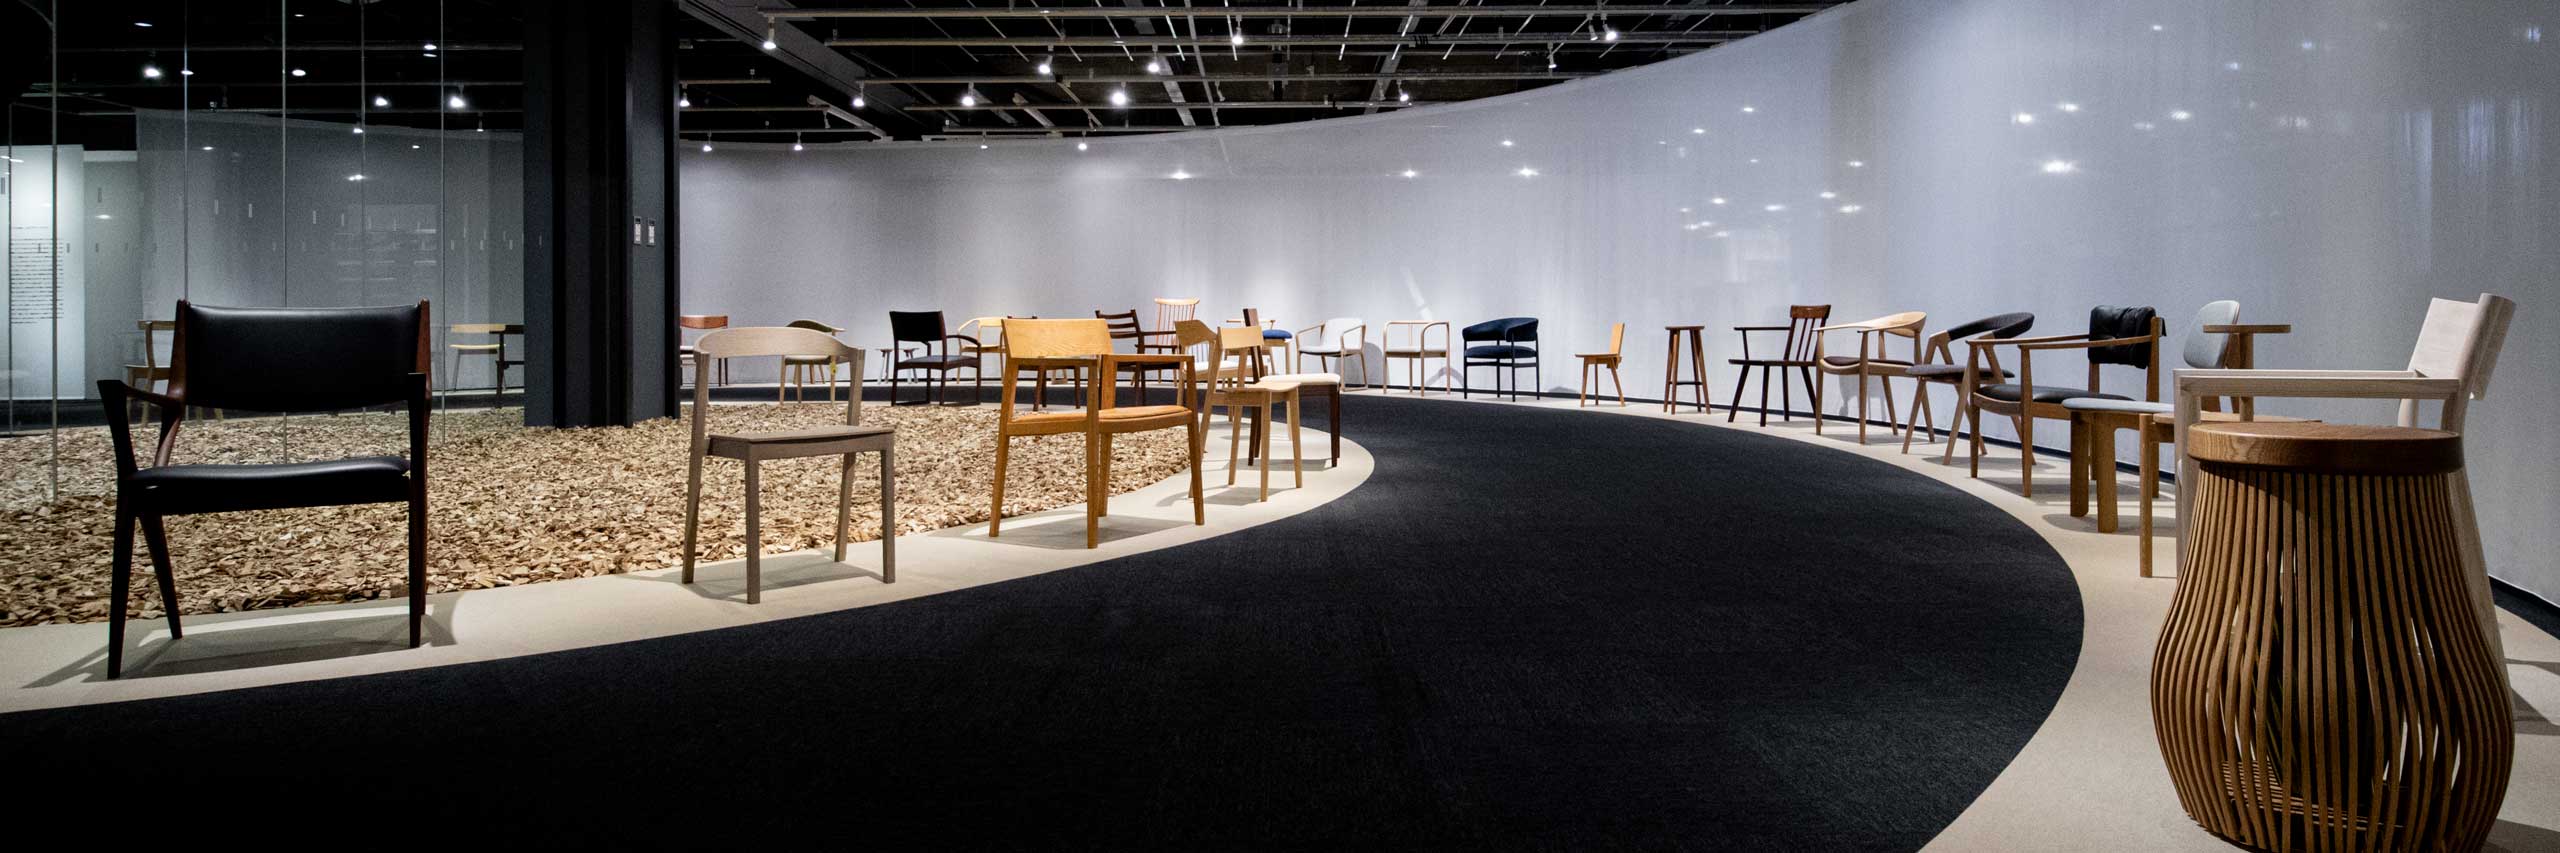 シーズン企画展｜ASAHIKAWA CHAIRS HISTORY - 椅子で紐解く､旭川デザインの20年｡